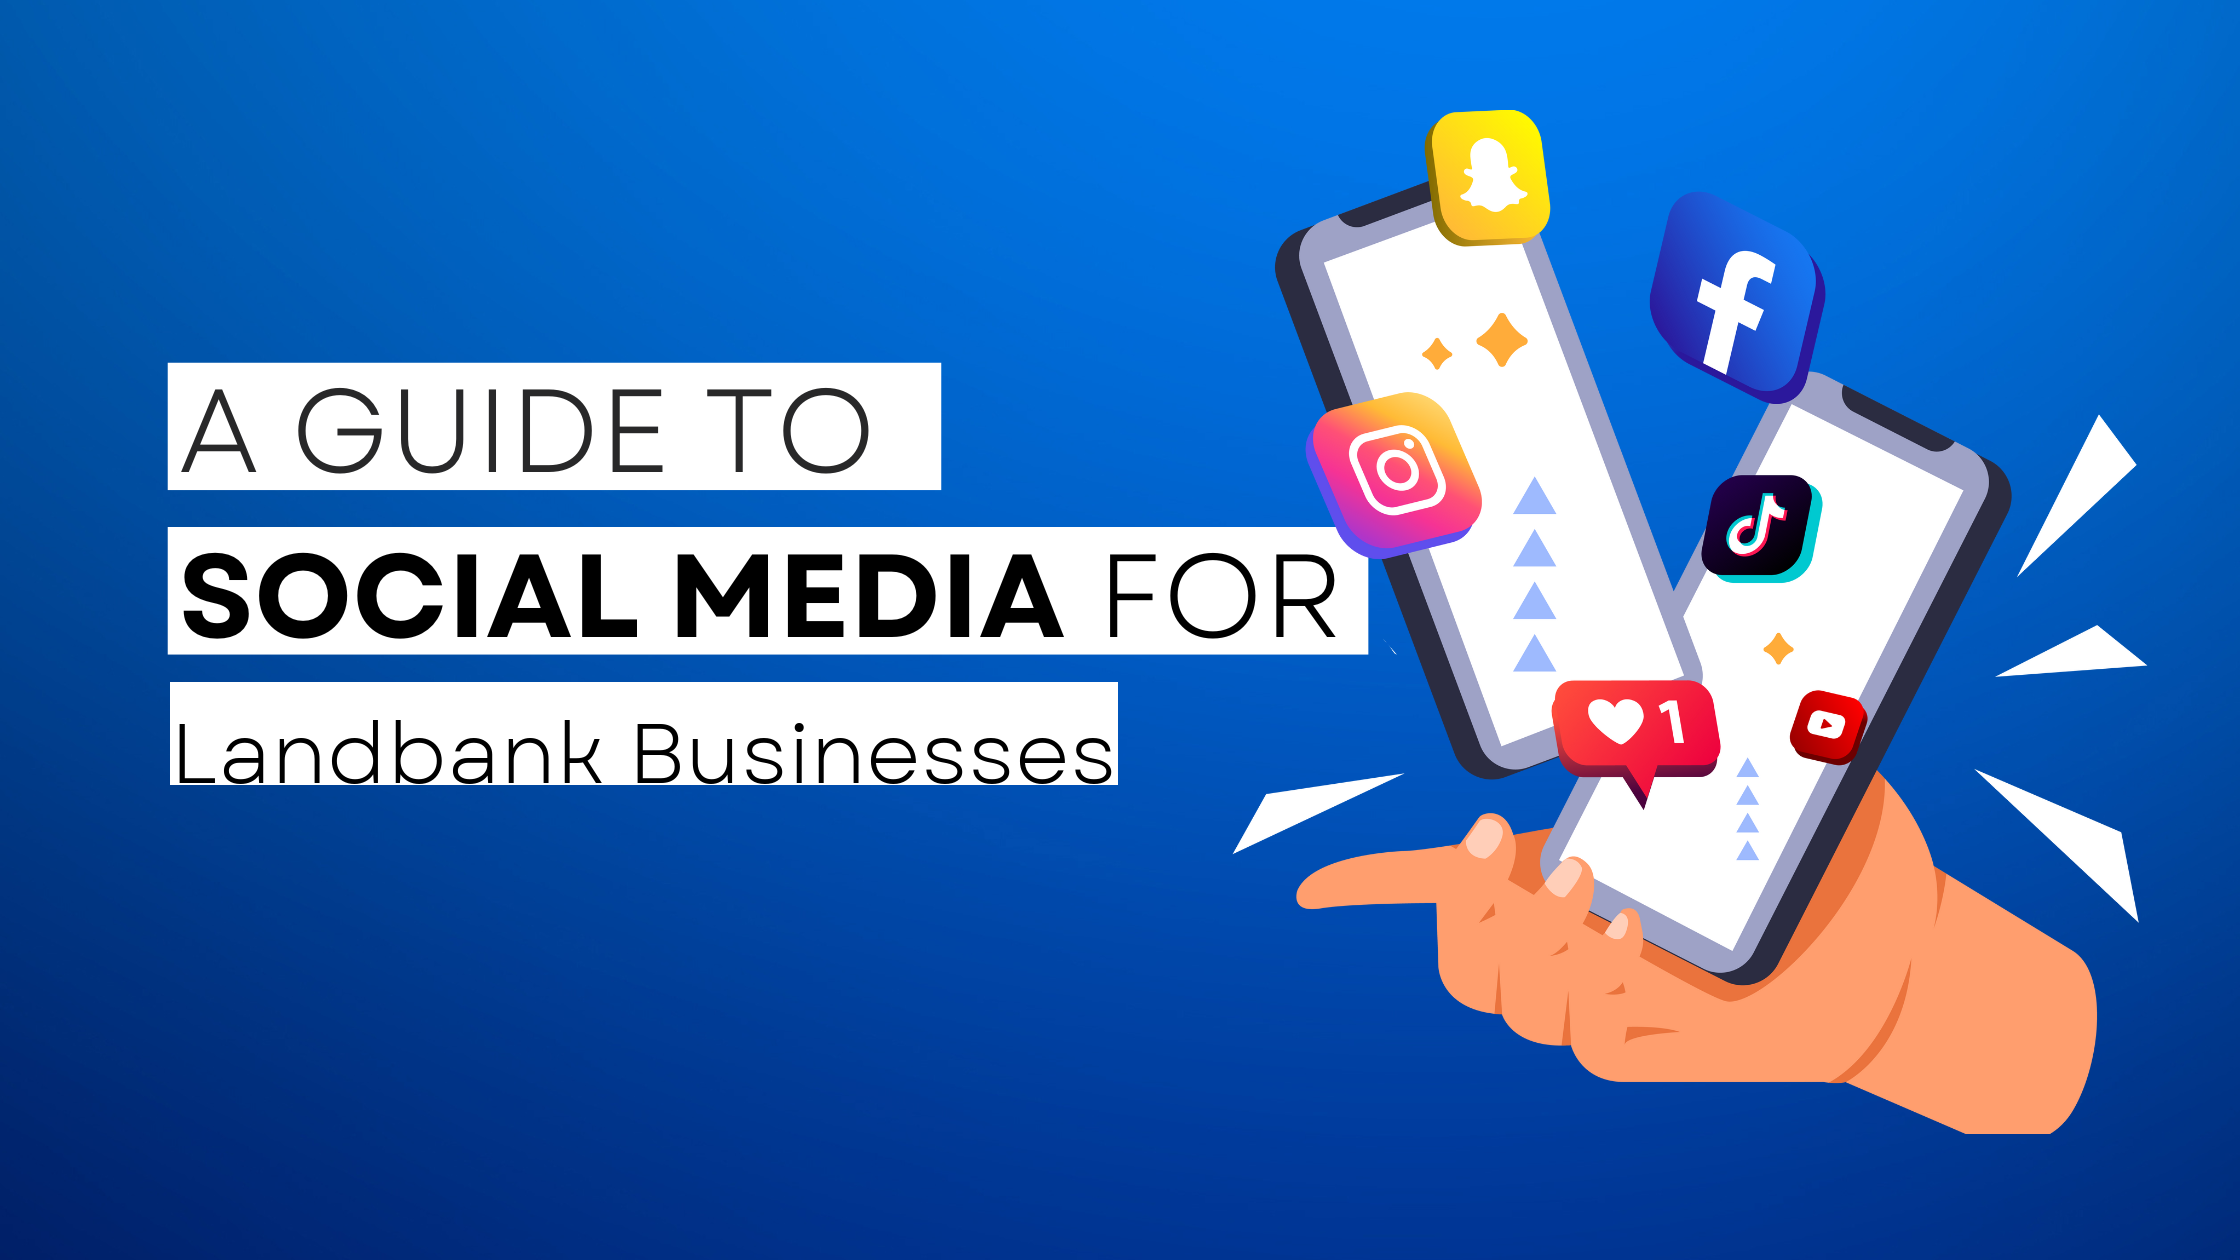 How to start Landbank on social media